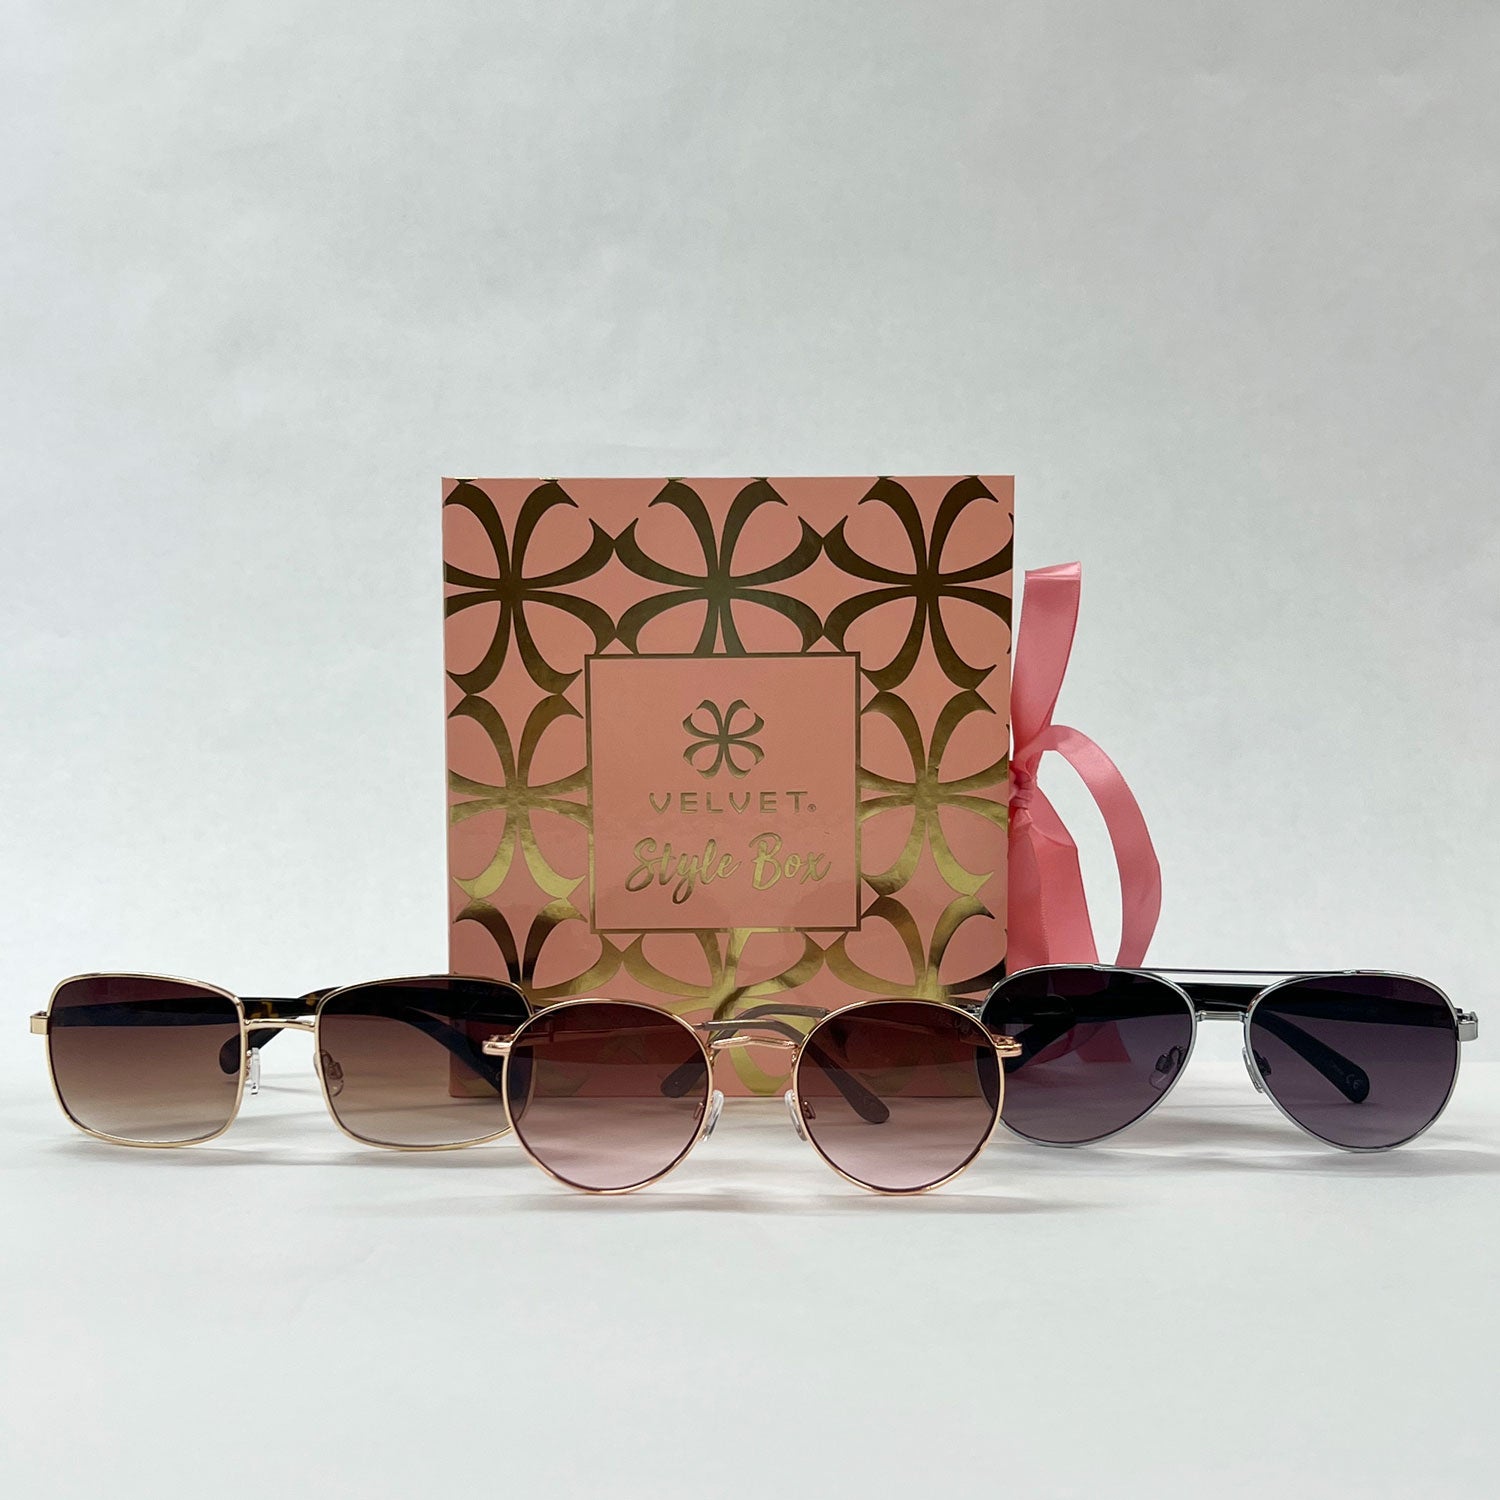 60s Style Box - Velvet Eyewear